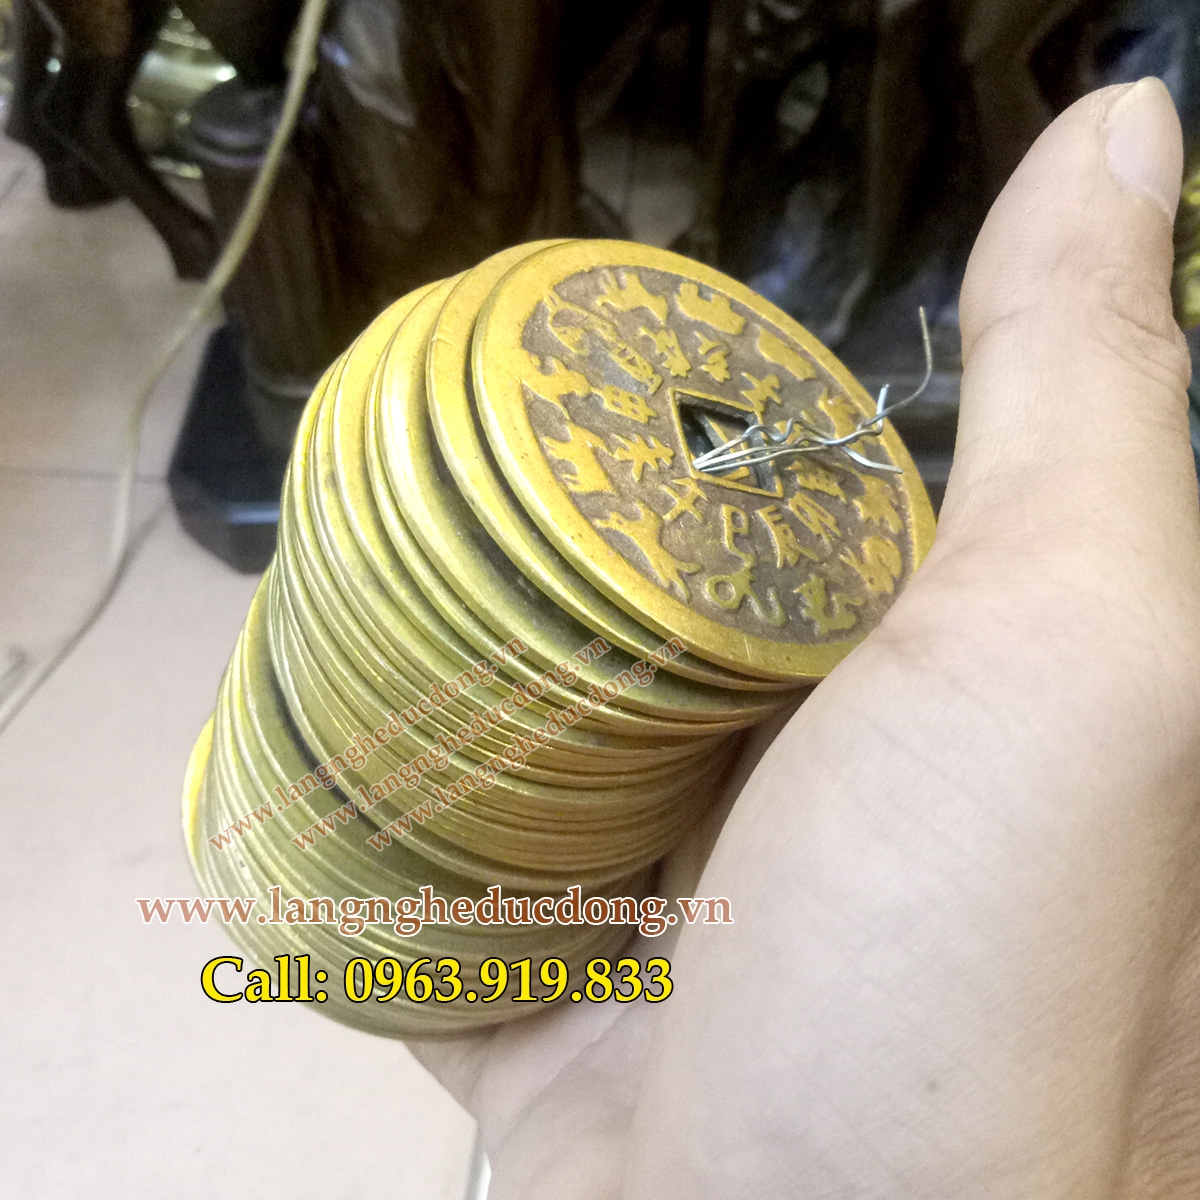 langngheducdong.vn - tiền xu, tiền phong thủy, vật phẩm phong thủy bằng đồng